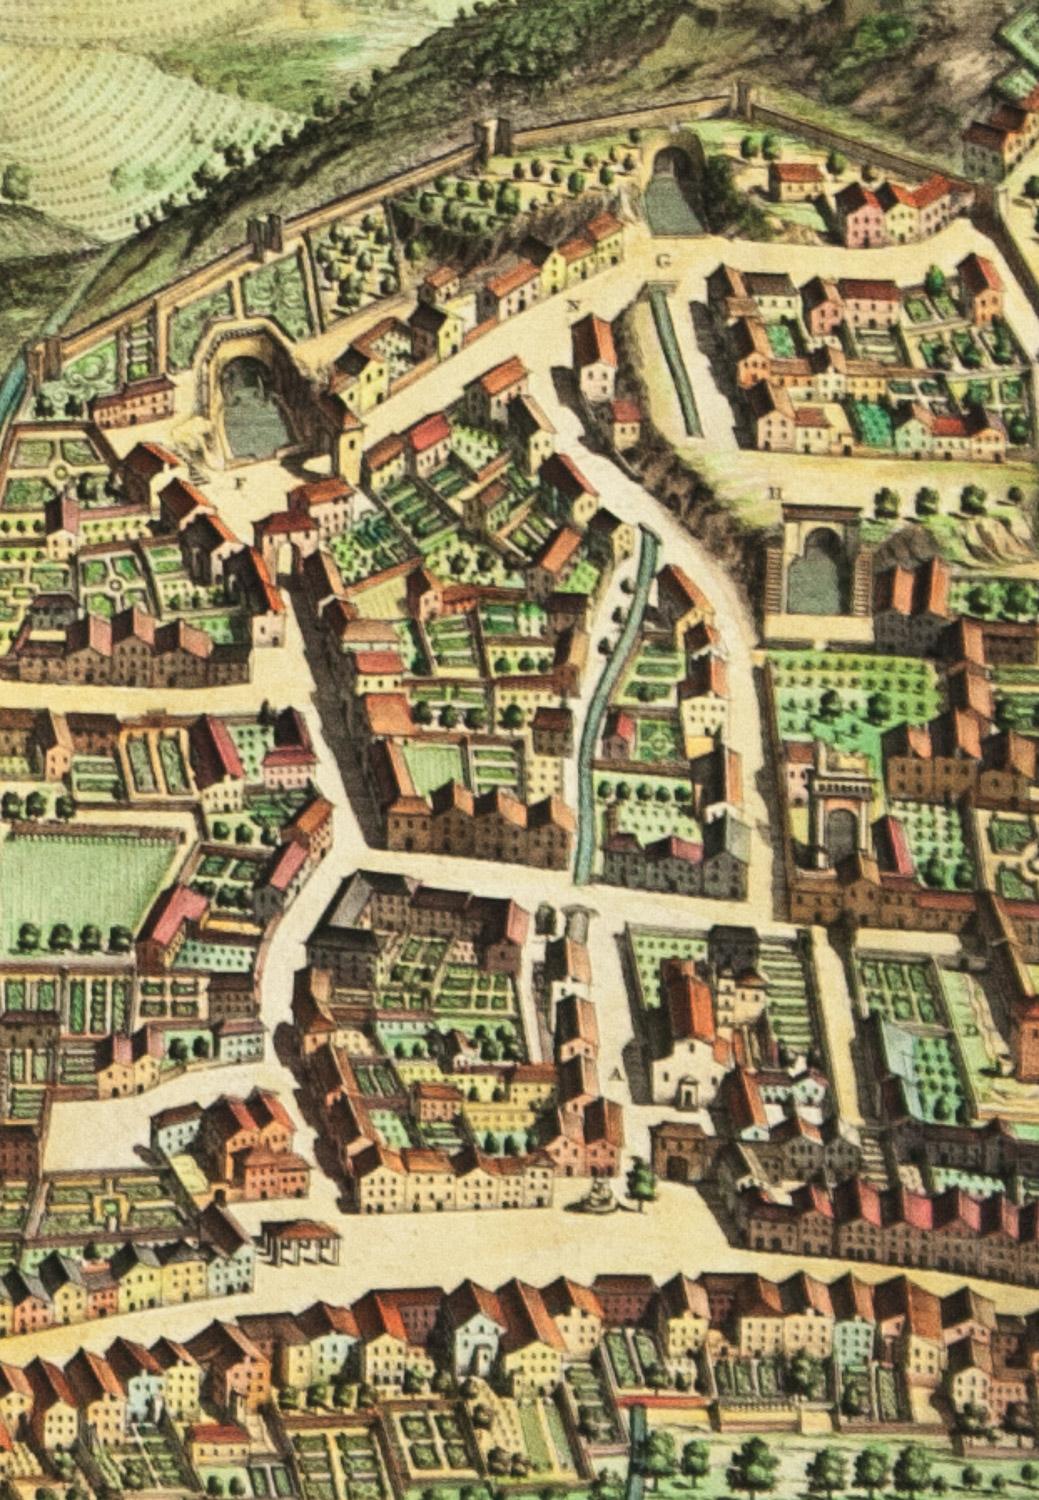 AYX Karte von Aix en Provence, Frankreich von J. Blaeu, 17. Jahrhundert  – Print von Joan (Johannes) Blaeu